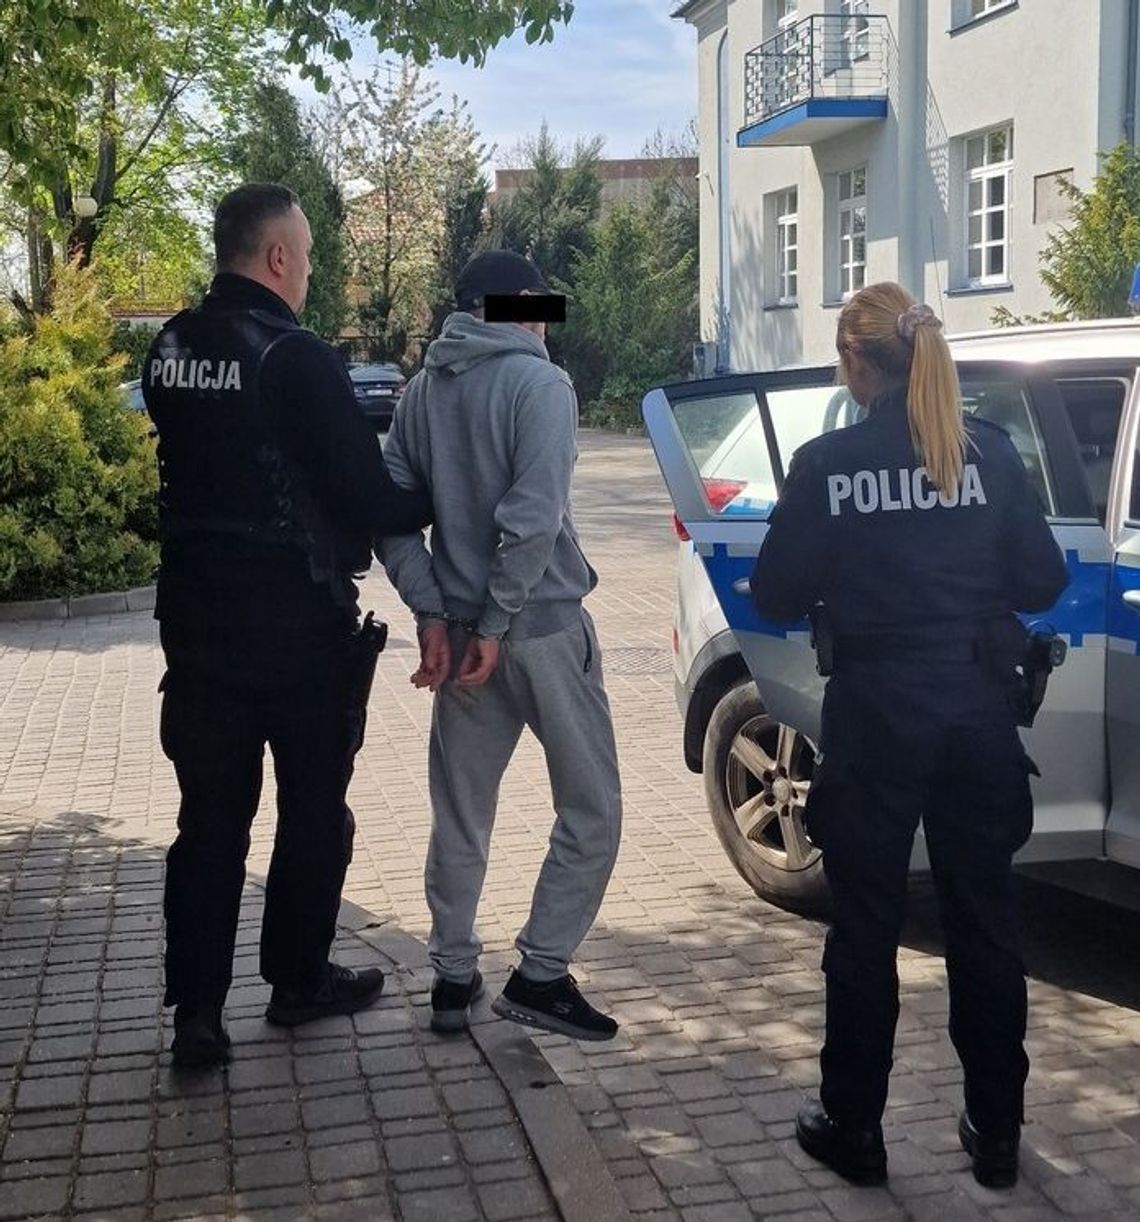 Gm. Włodawa. 40-latek aresztowany za przemoc domową